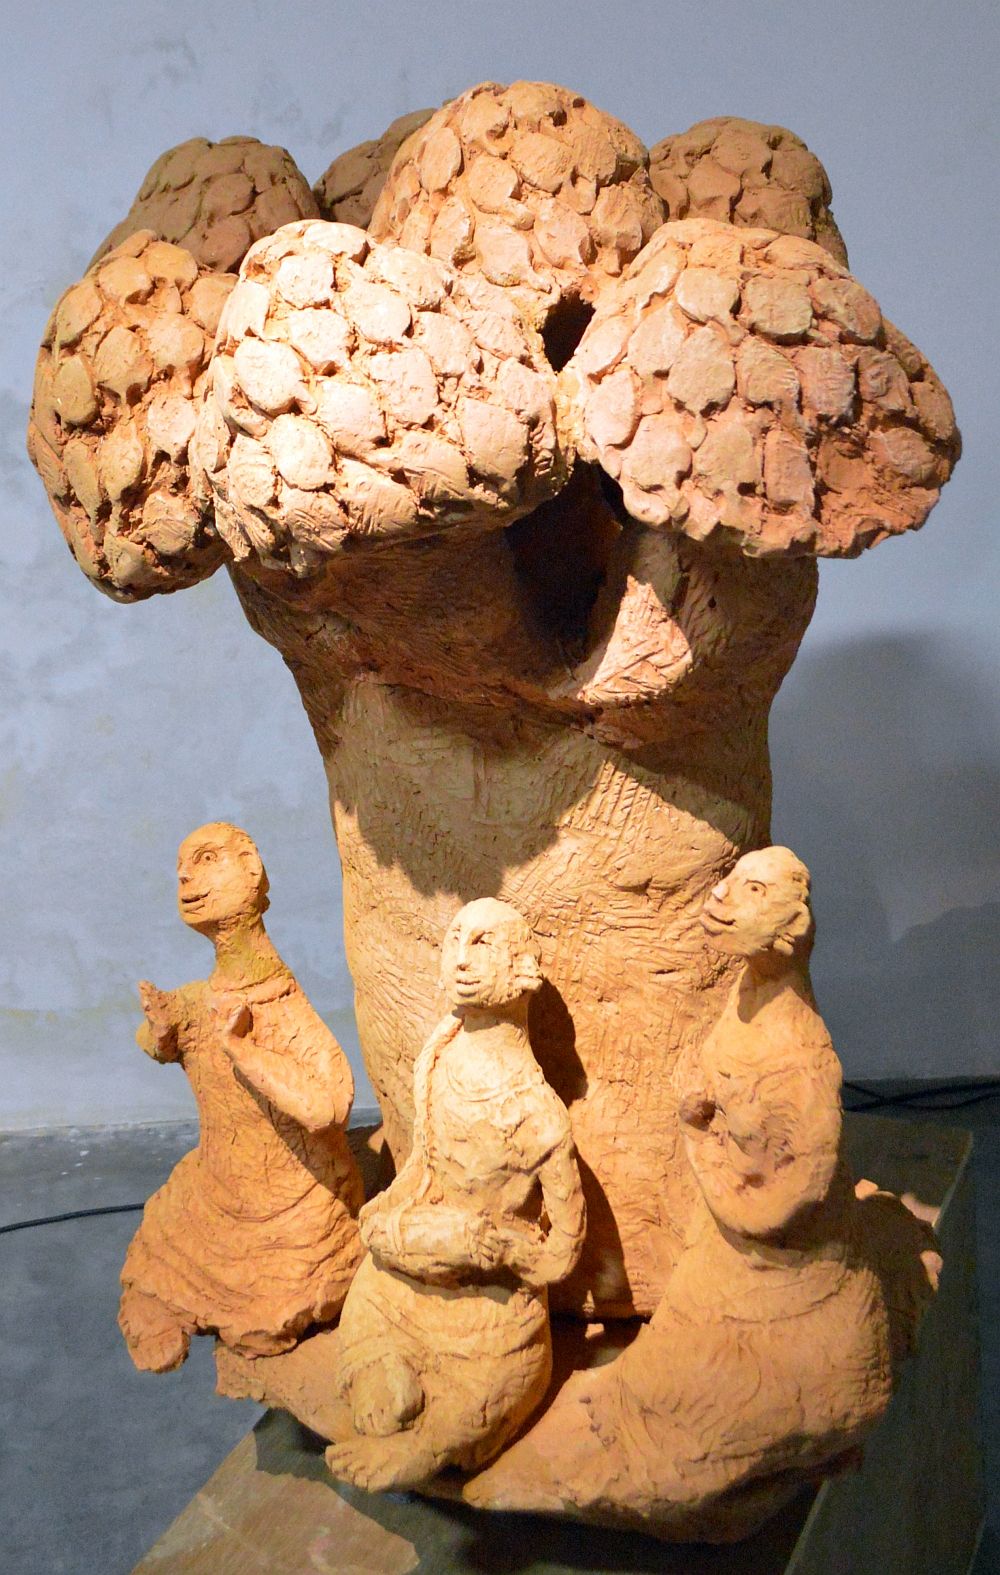 Three Musicians under a Tree: Terracotta sculpture by RamKumar Manna